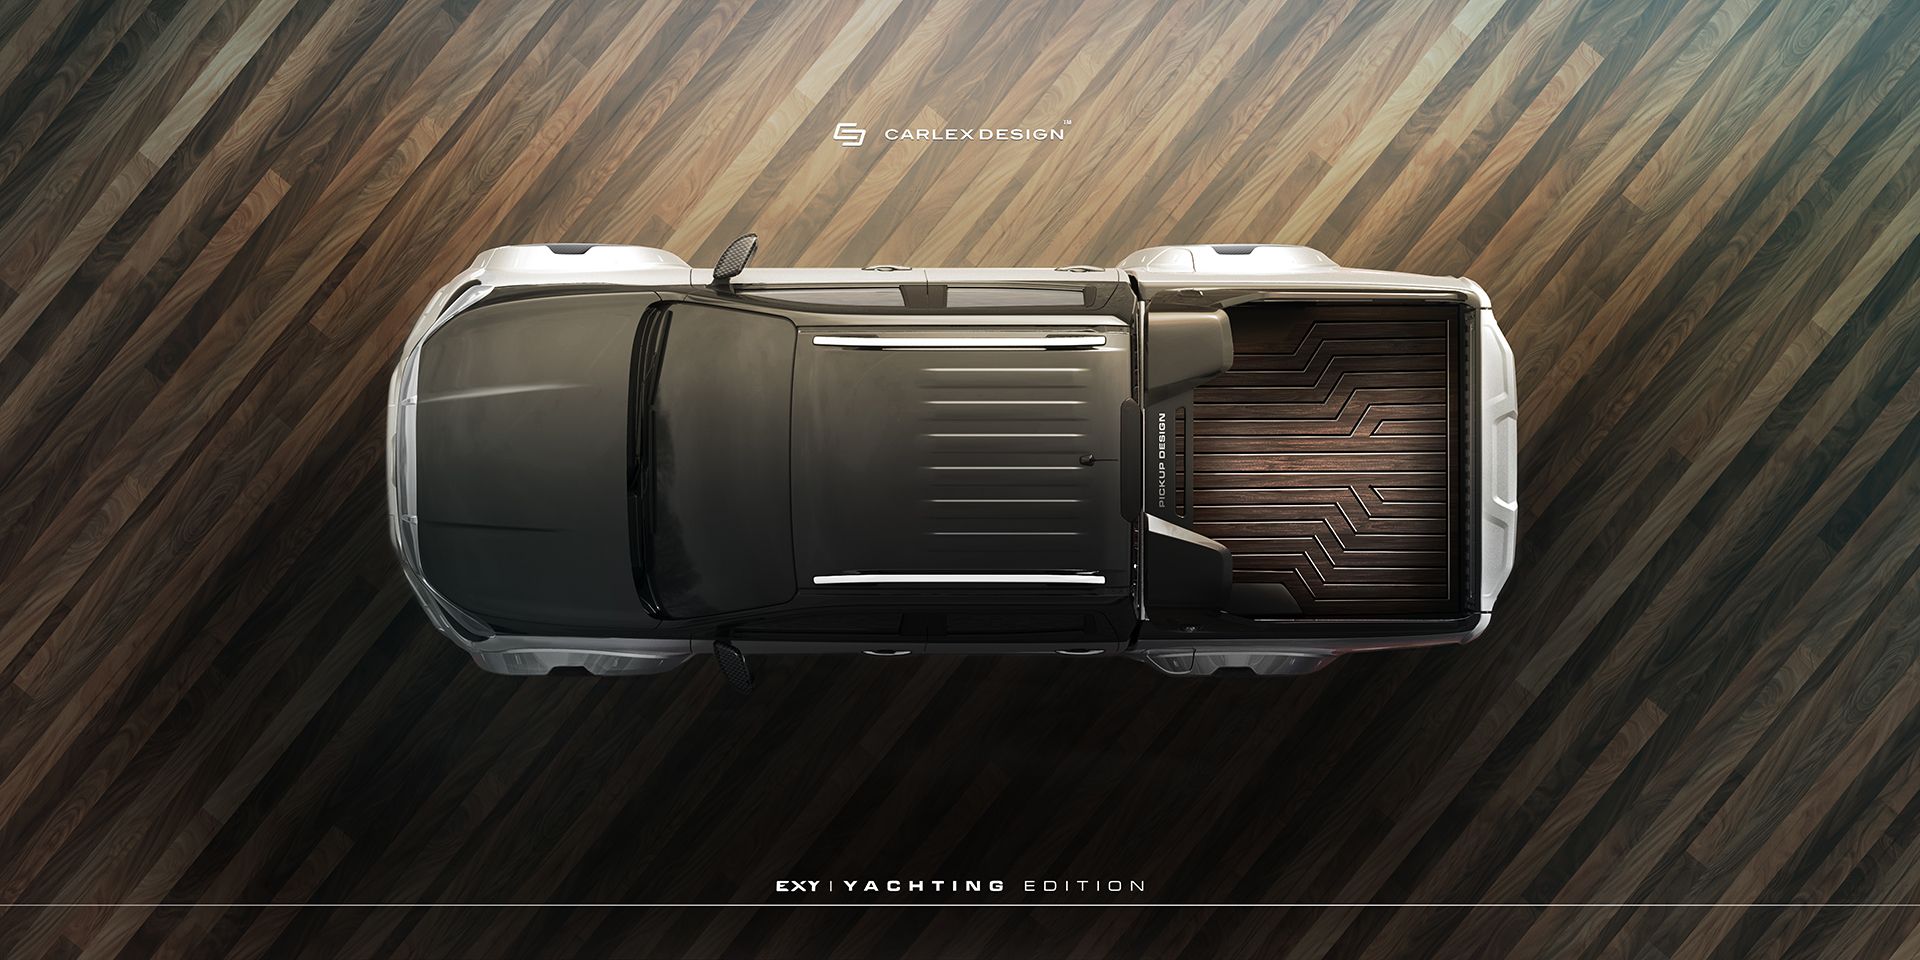 2018 Mercedes X-Class By Carlex Design